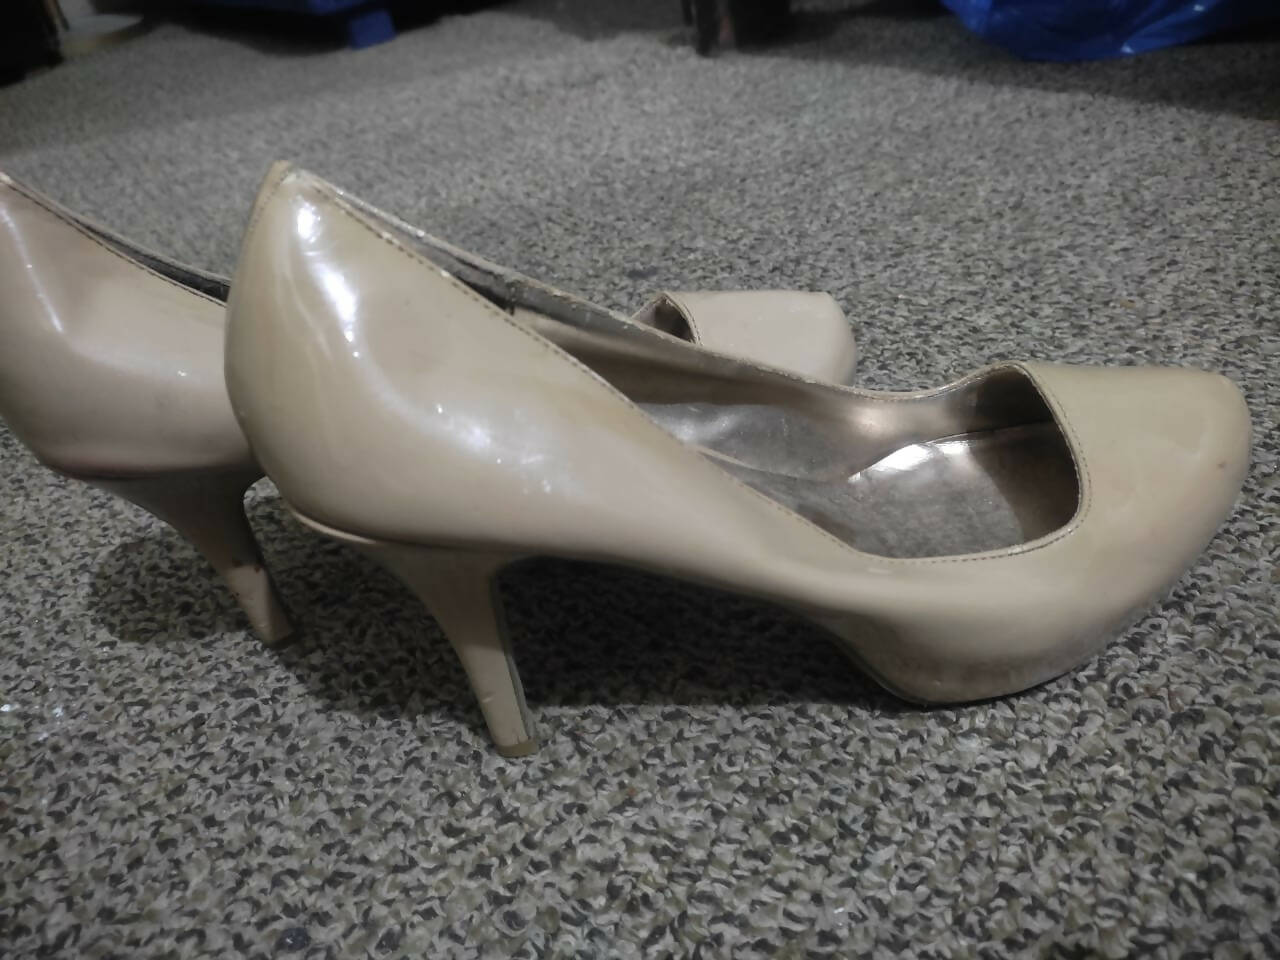 Stylish Beige Heels | Women Shoes | Size: 39 | Worn Once